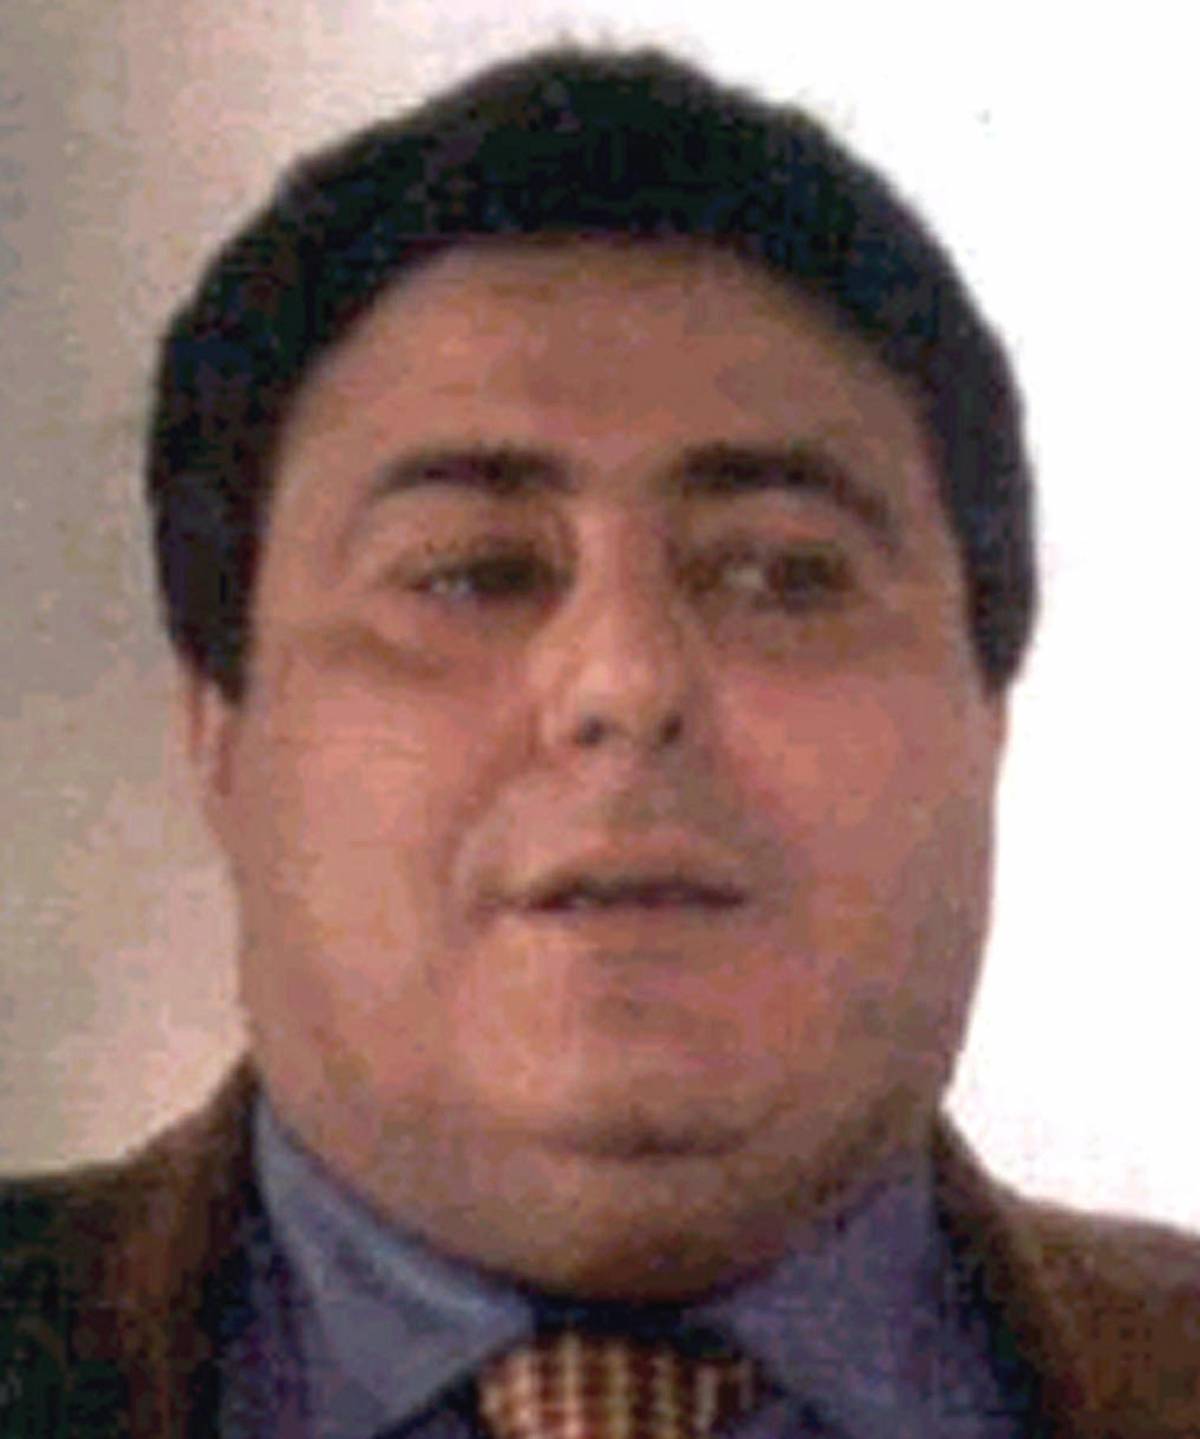 Arrestato Roberto Pannunzi, il "Pablo escobar italiano"